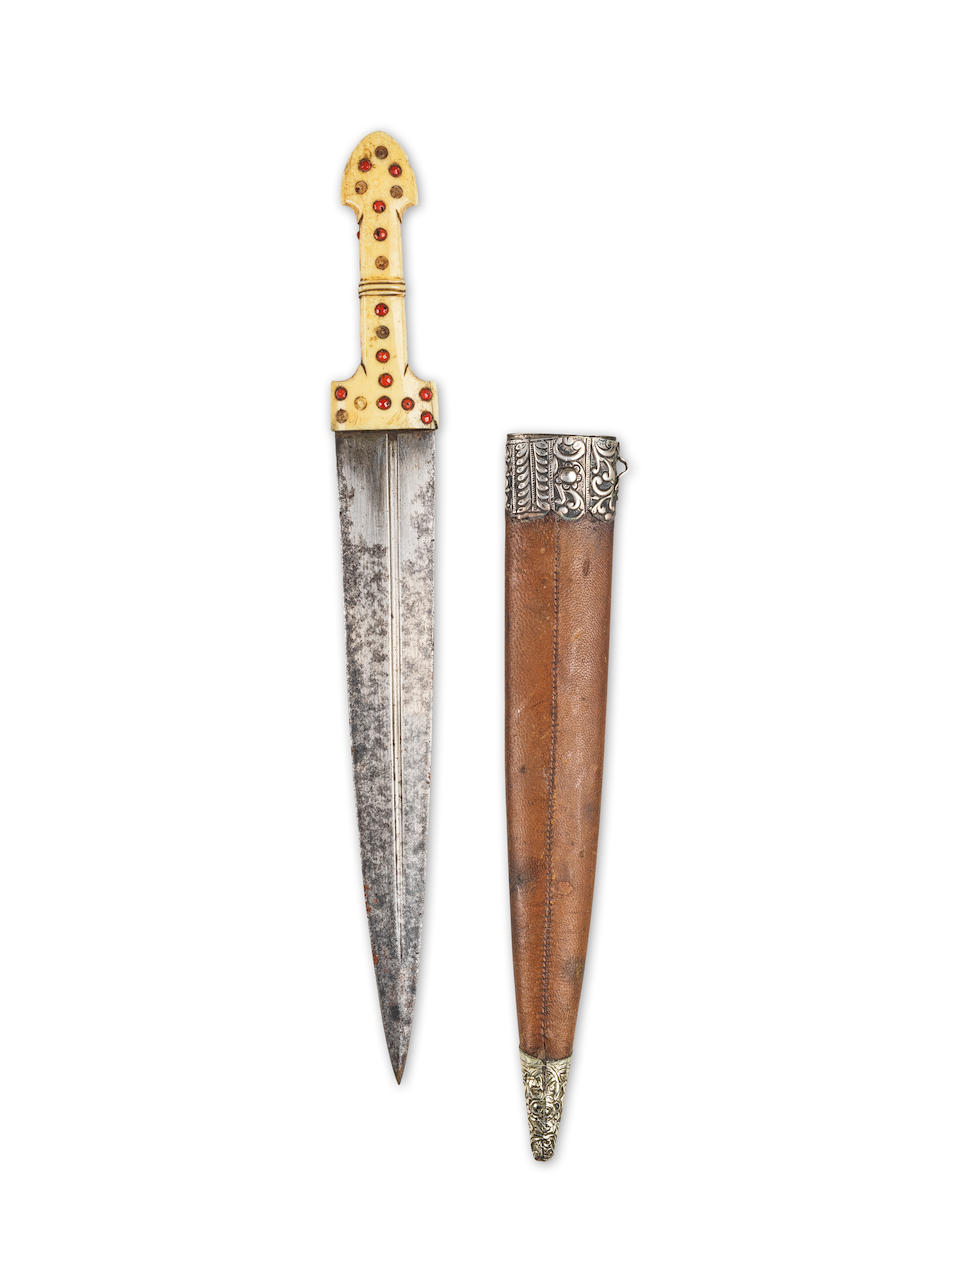 Dague kindjal en acier à manche en ivoire marin Turquie, XIXe siècle - Image 2 of 2